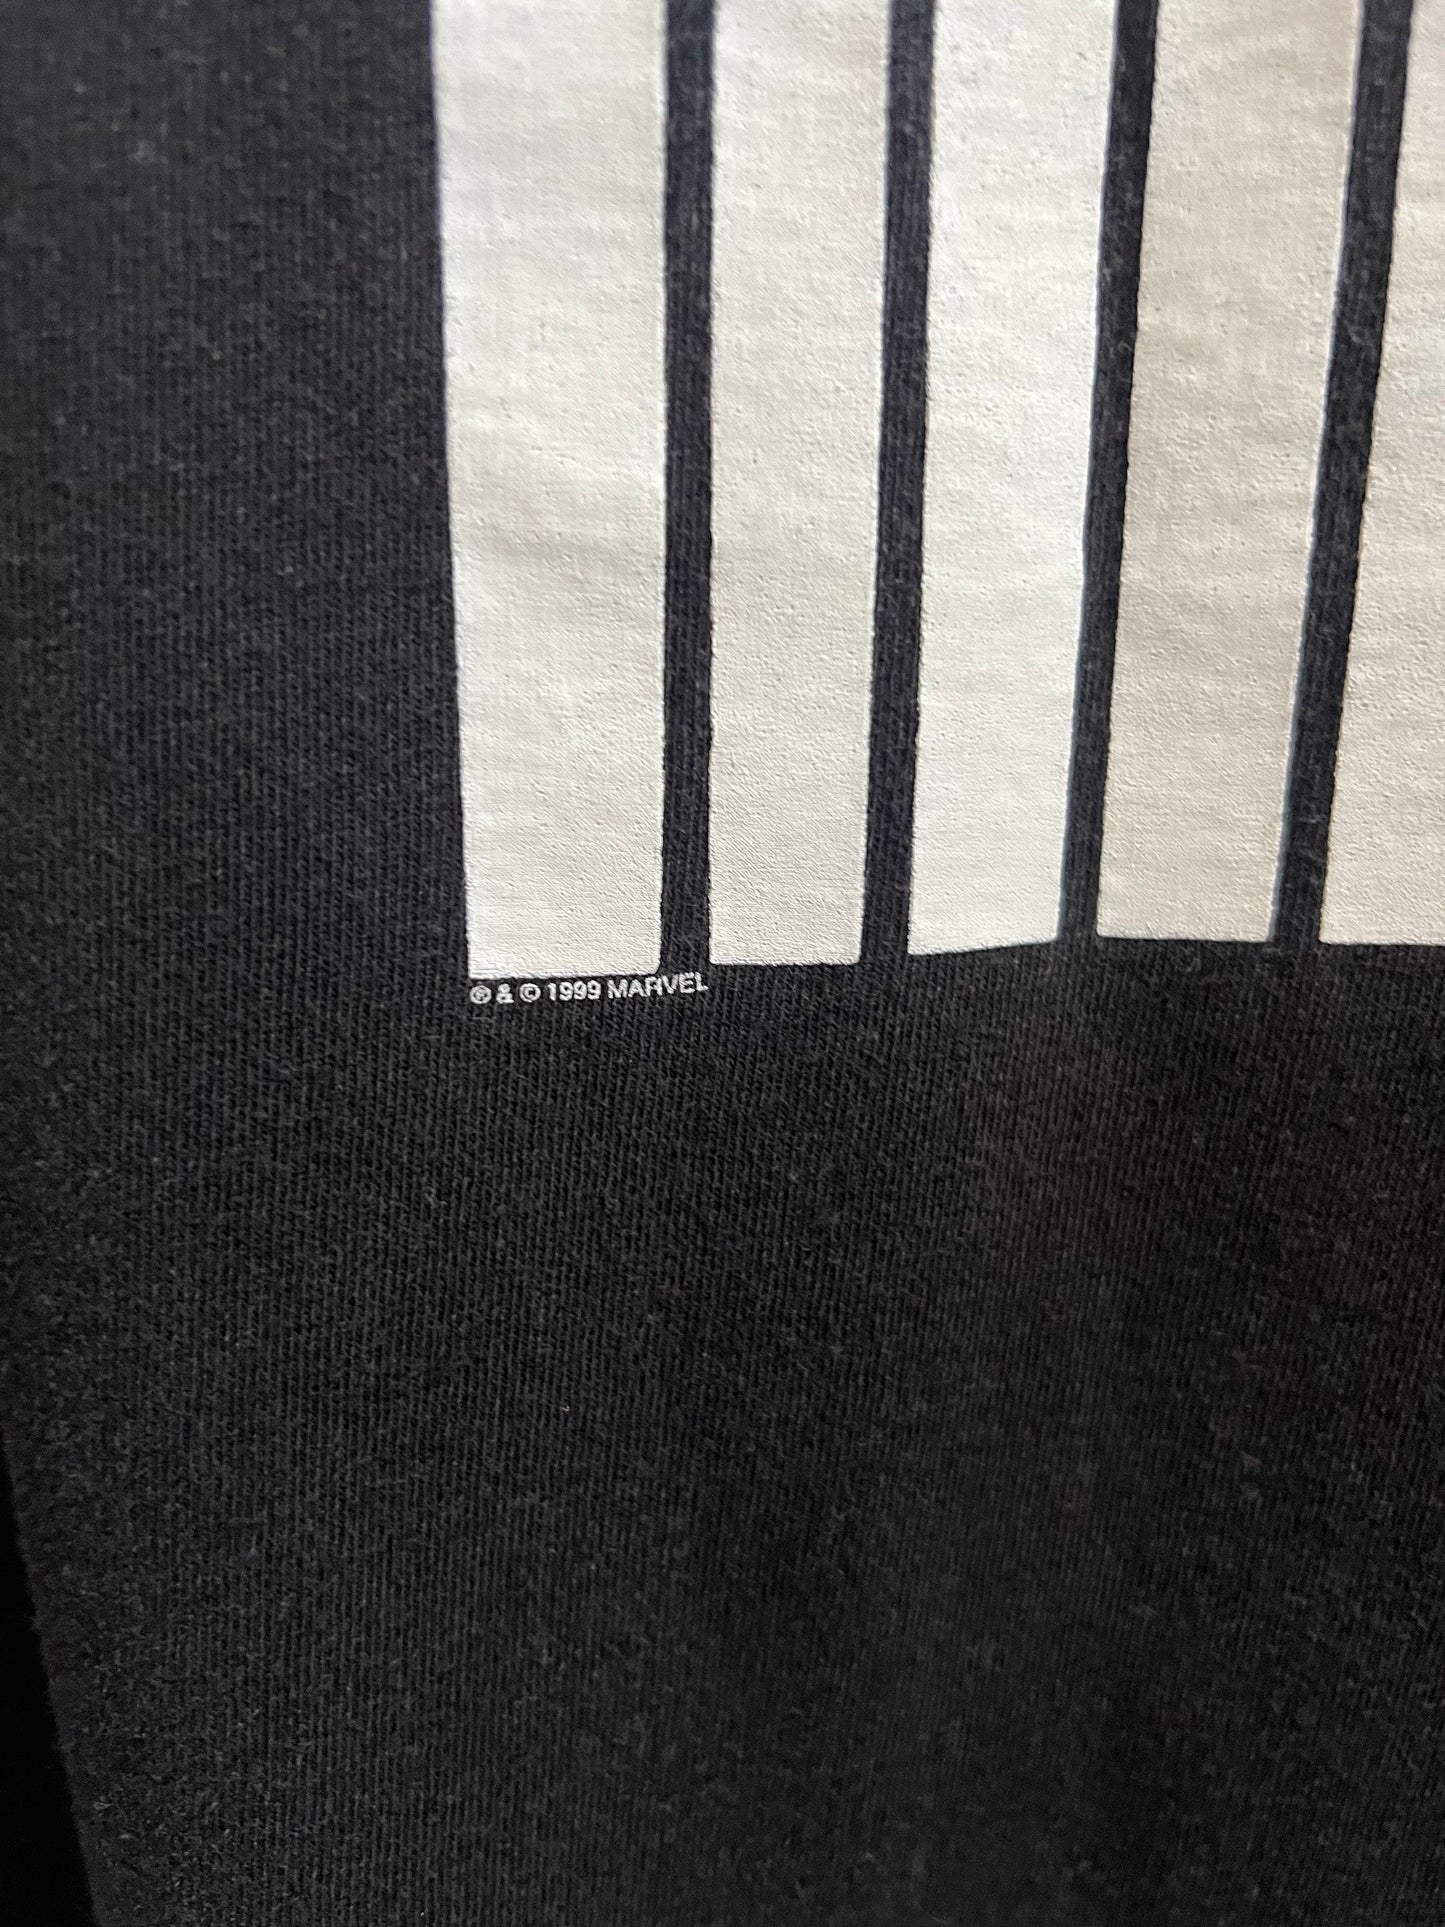 1999 Marvel Punisher T-shirt size XL